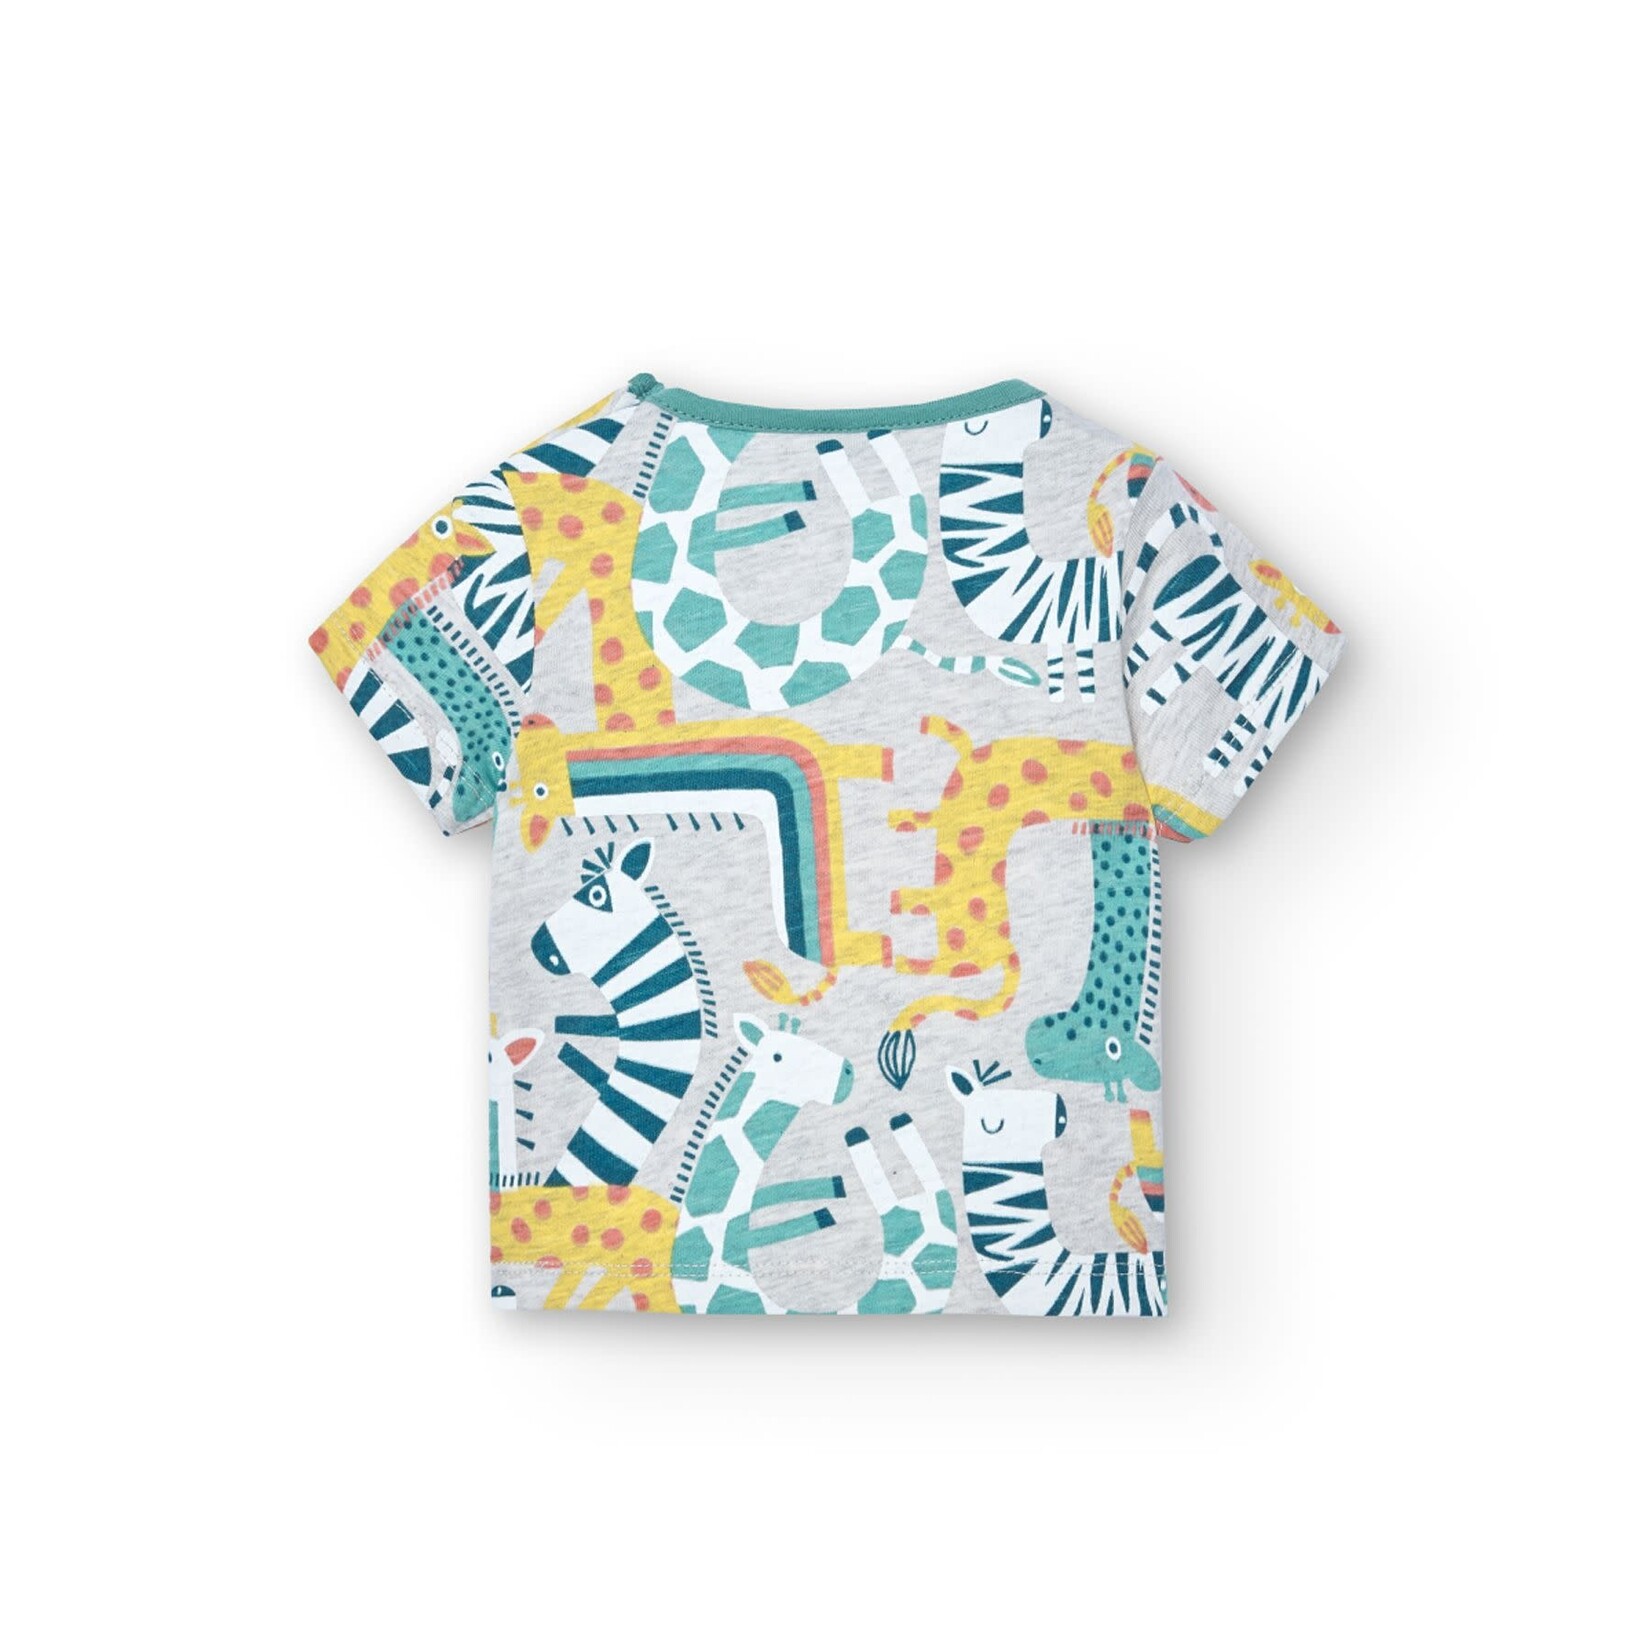 Boboli BOBOLI - Two-piece set - Shortsleeve t-shirt with safari animal print and turquoise shorts